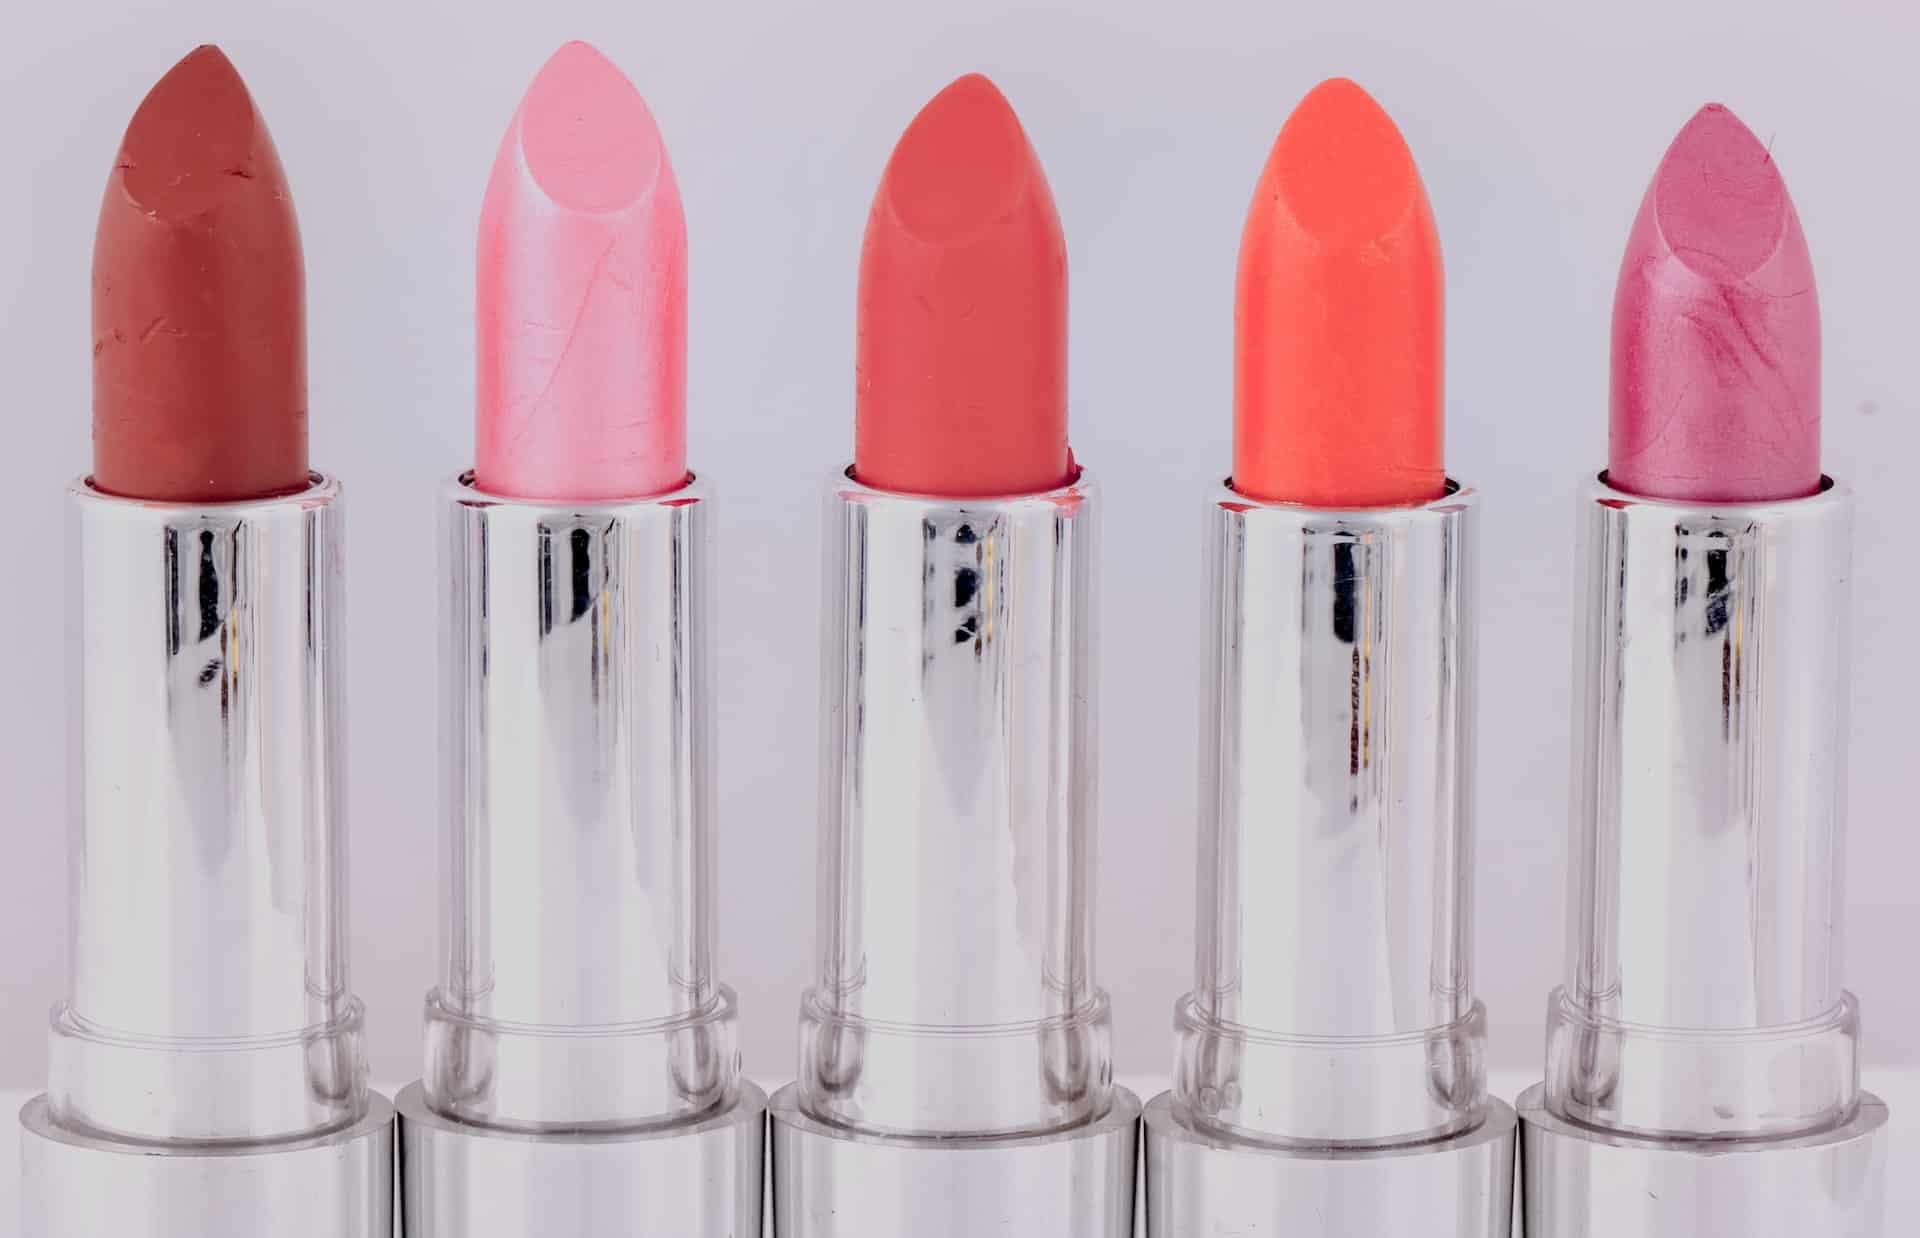 Lipstick finish – satin, pearl or matte?